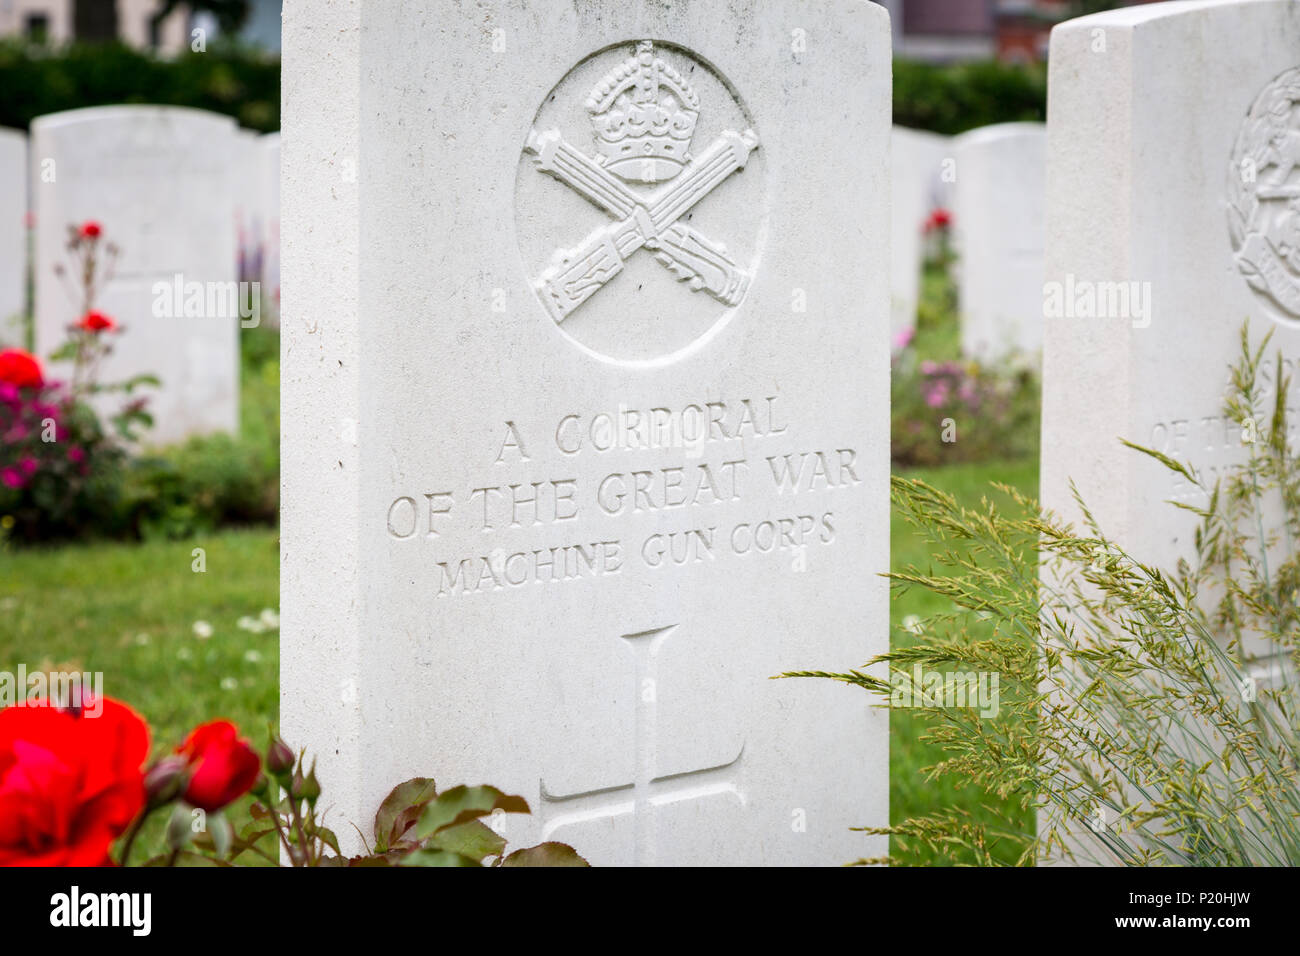 Pierre tombale ou pierre tombale d'un soldat de la première guerre mondiale, un artilleur de la machine gun corps Ypres, Belgique Banque D'Images